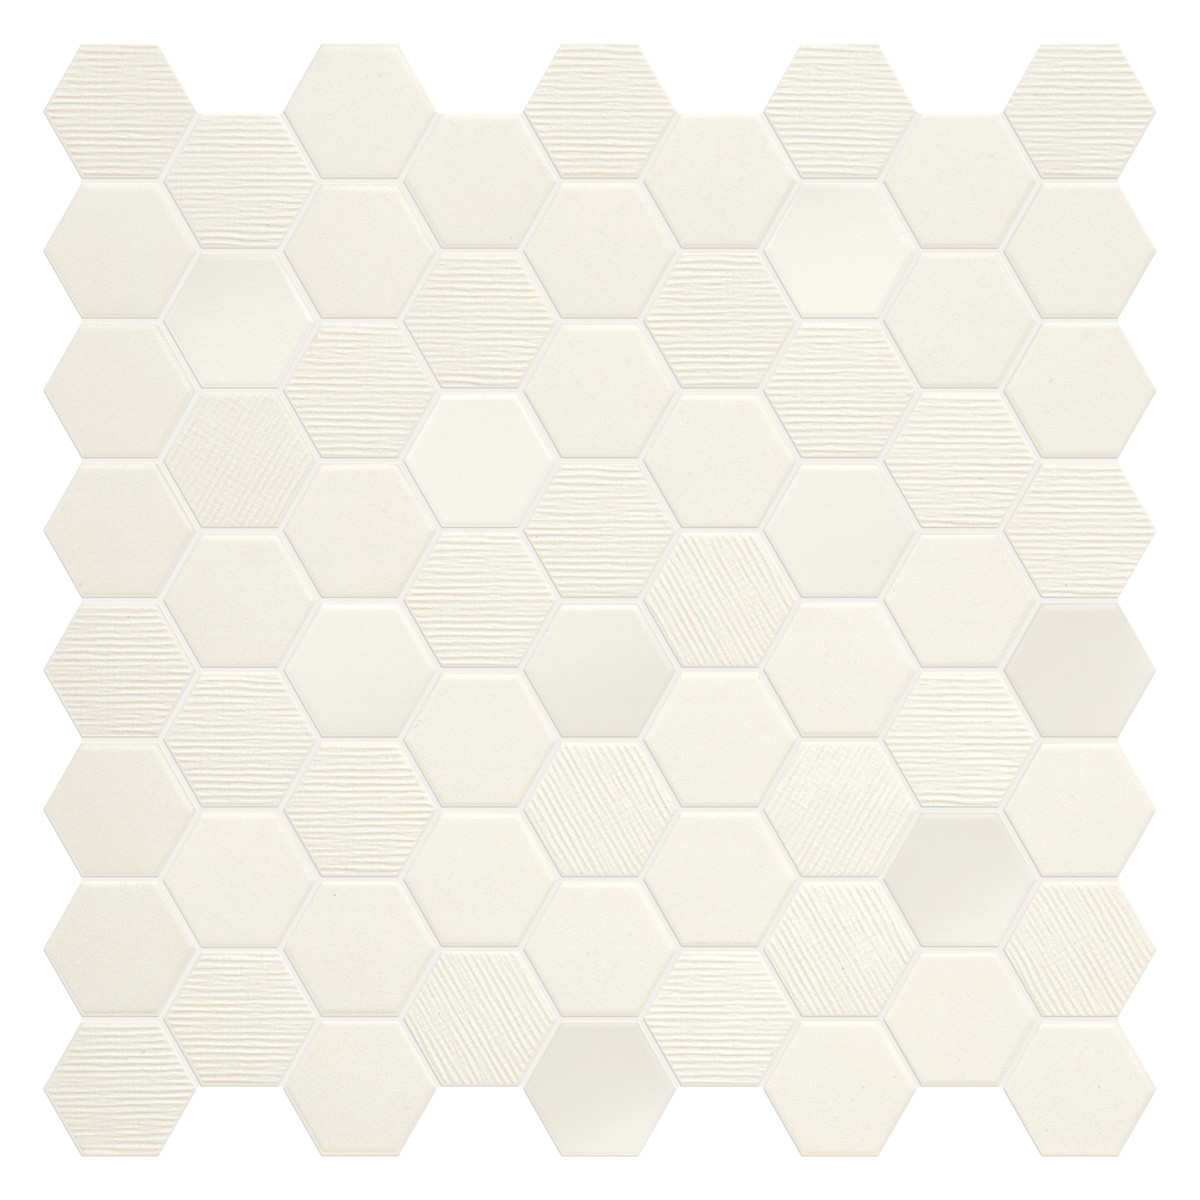 Bodenfliese,Wandfliese Terratinta Hexa Cotton Candy Matt – Glossy Cotton Candy TTBST01MHMIX glaenzend matt 31,6x31,6cm Mosaik 4,3x3,8 Mix 4mm